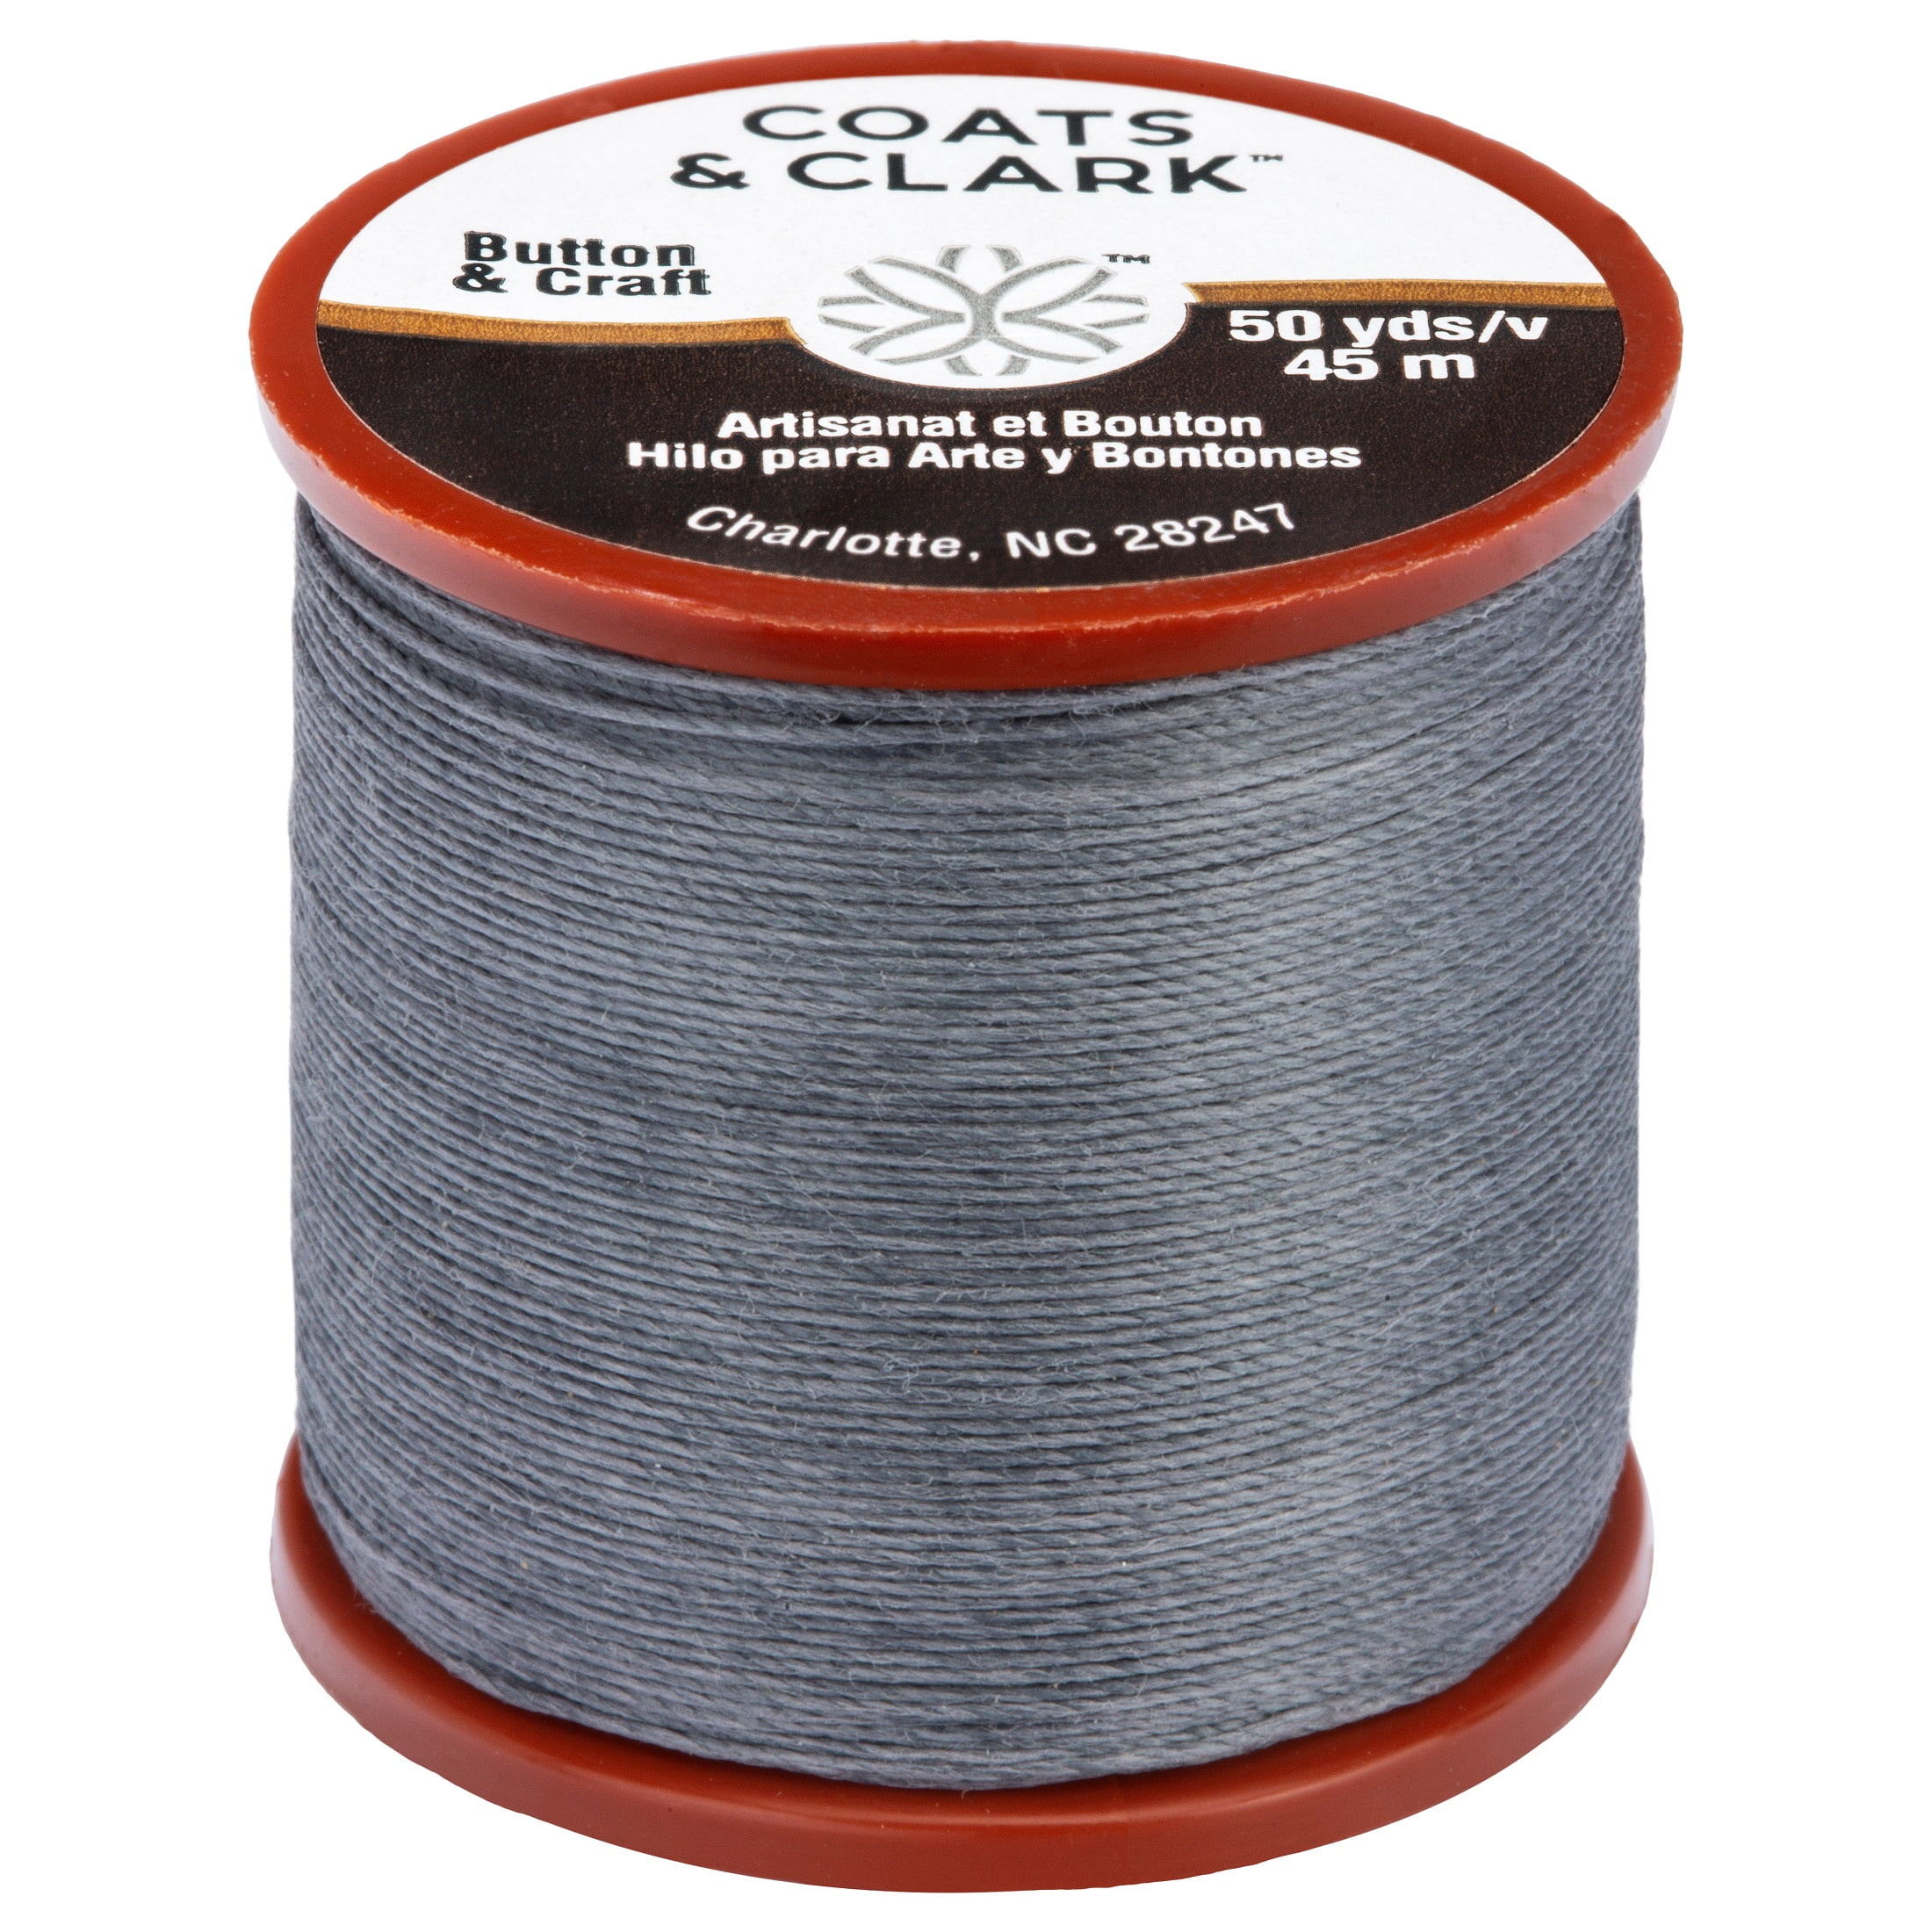 Coats & Clarks Tatting Thread Size 70 125 Yds. each 6 spools Tatt Crochet  Fun LV